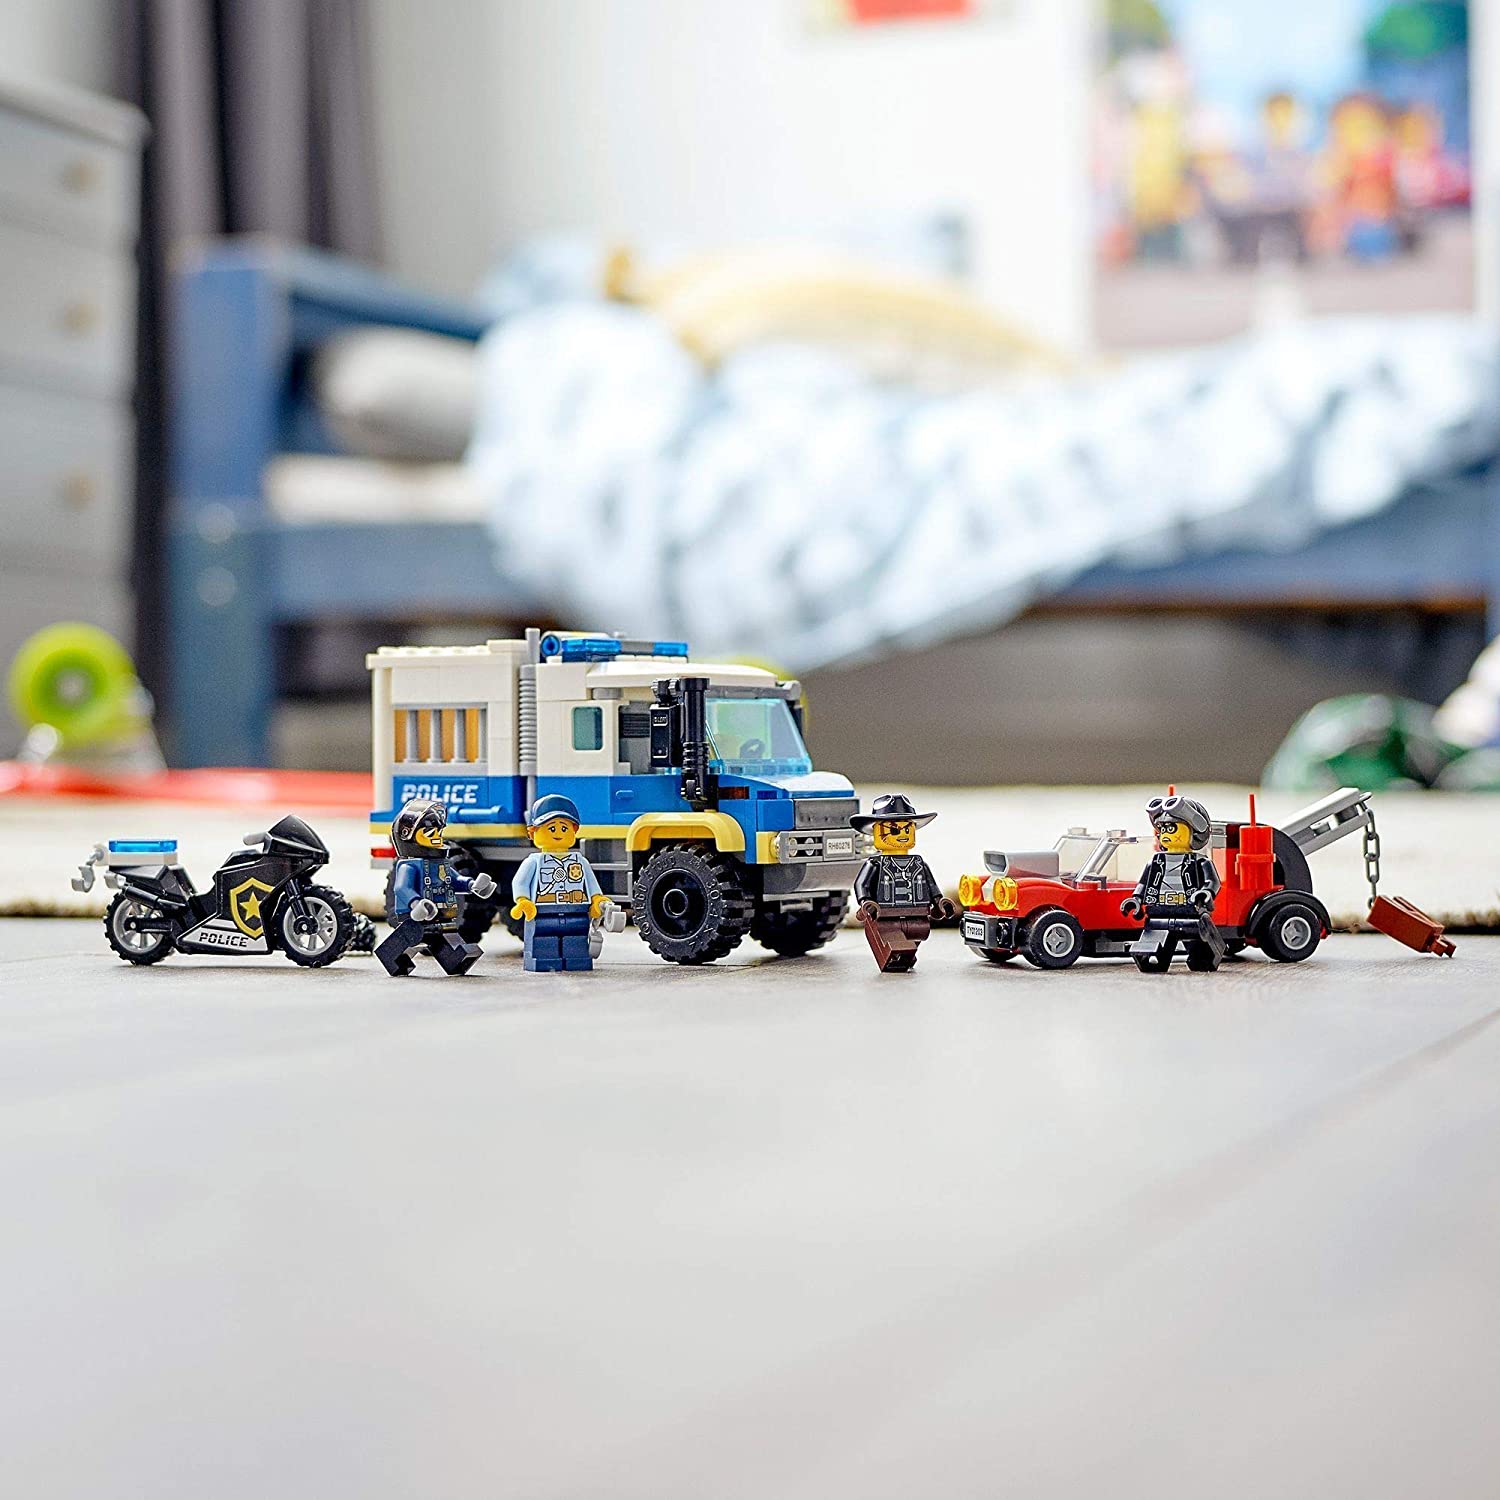 LEGO 60276 City Polizei Gefangenentransporter, Polizeistation Erweiterungsset